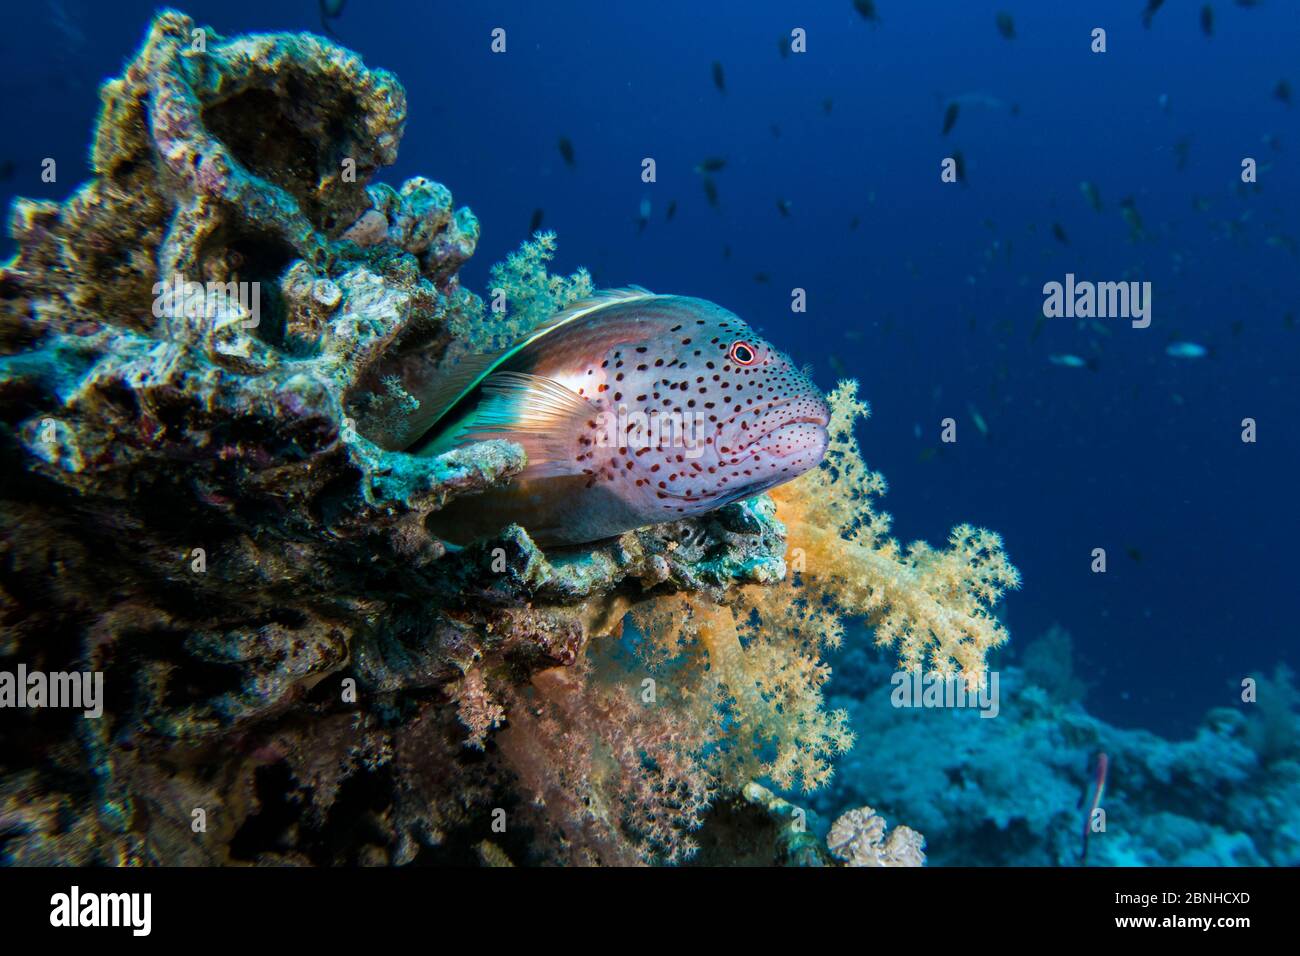 Sommersprossen-Falkenfisch (Paracirrhites forsteri) auf einem Korallenriff, nördliches Rotes Meer. Stockfoto